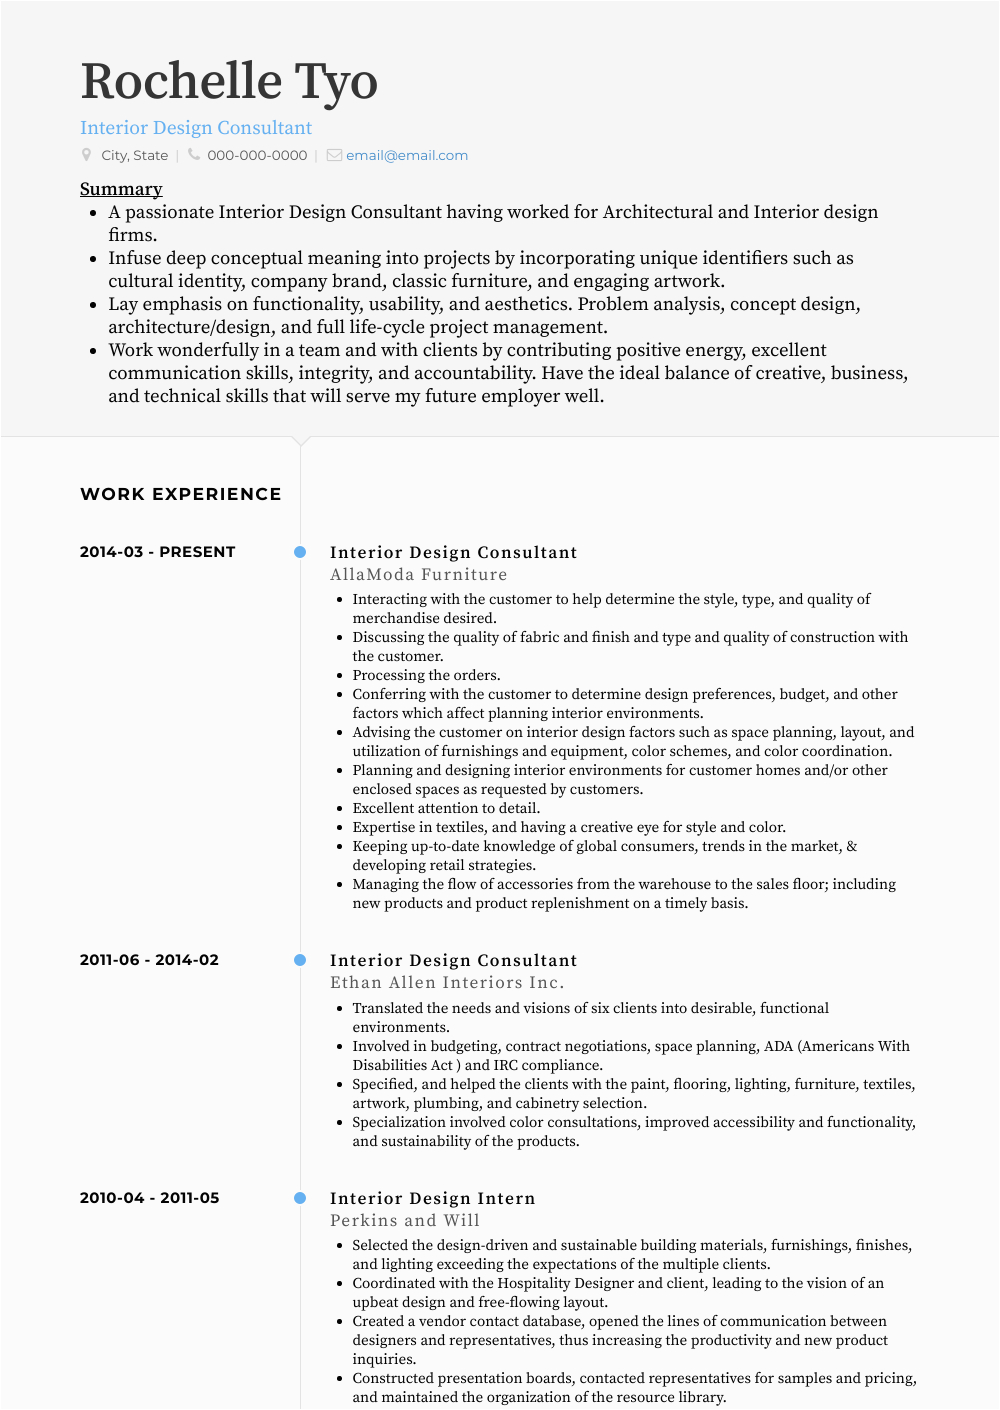 Sample Resume for Interior Design Consultant Design Consultant Resume Samples 1 Resource for Templates & Skills